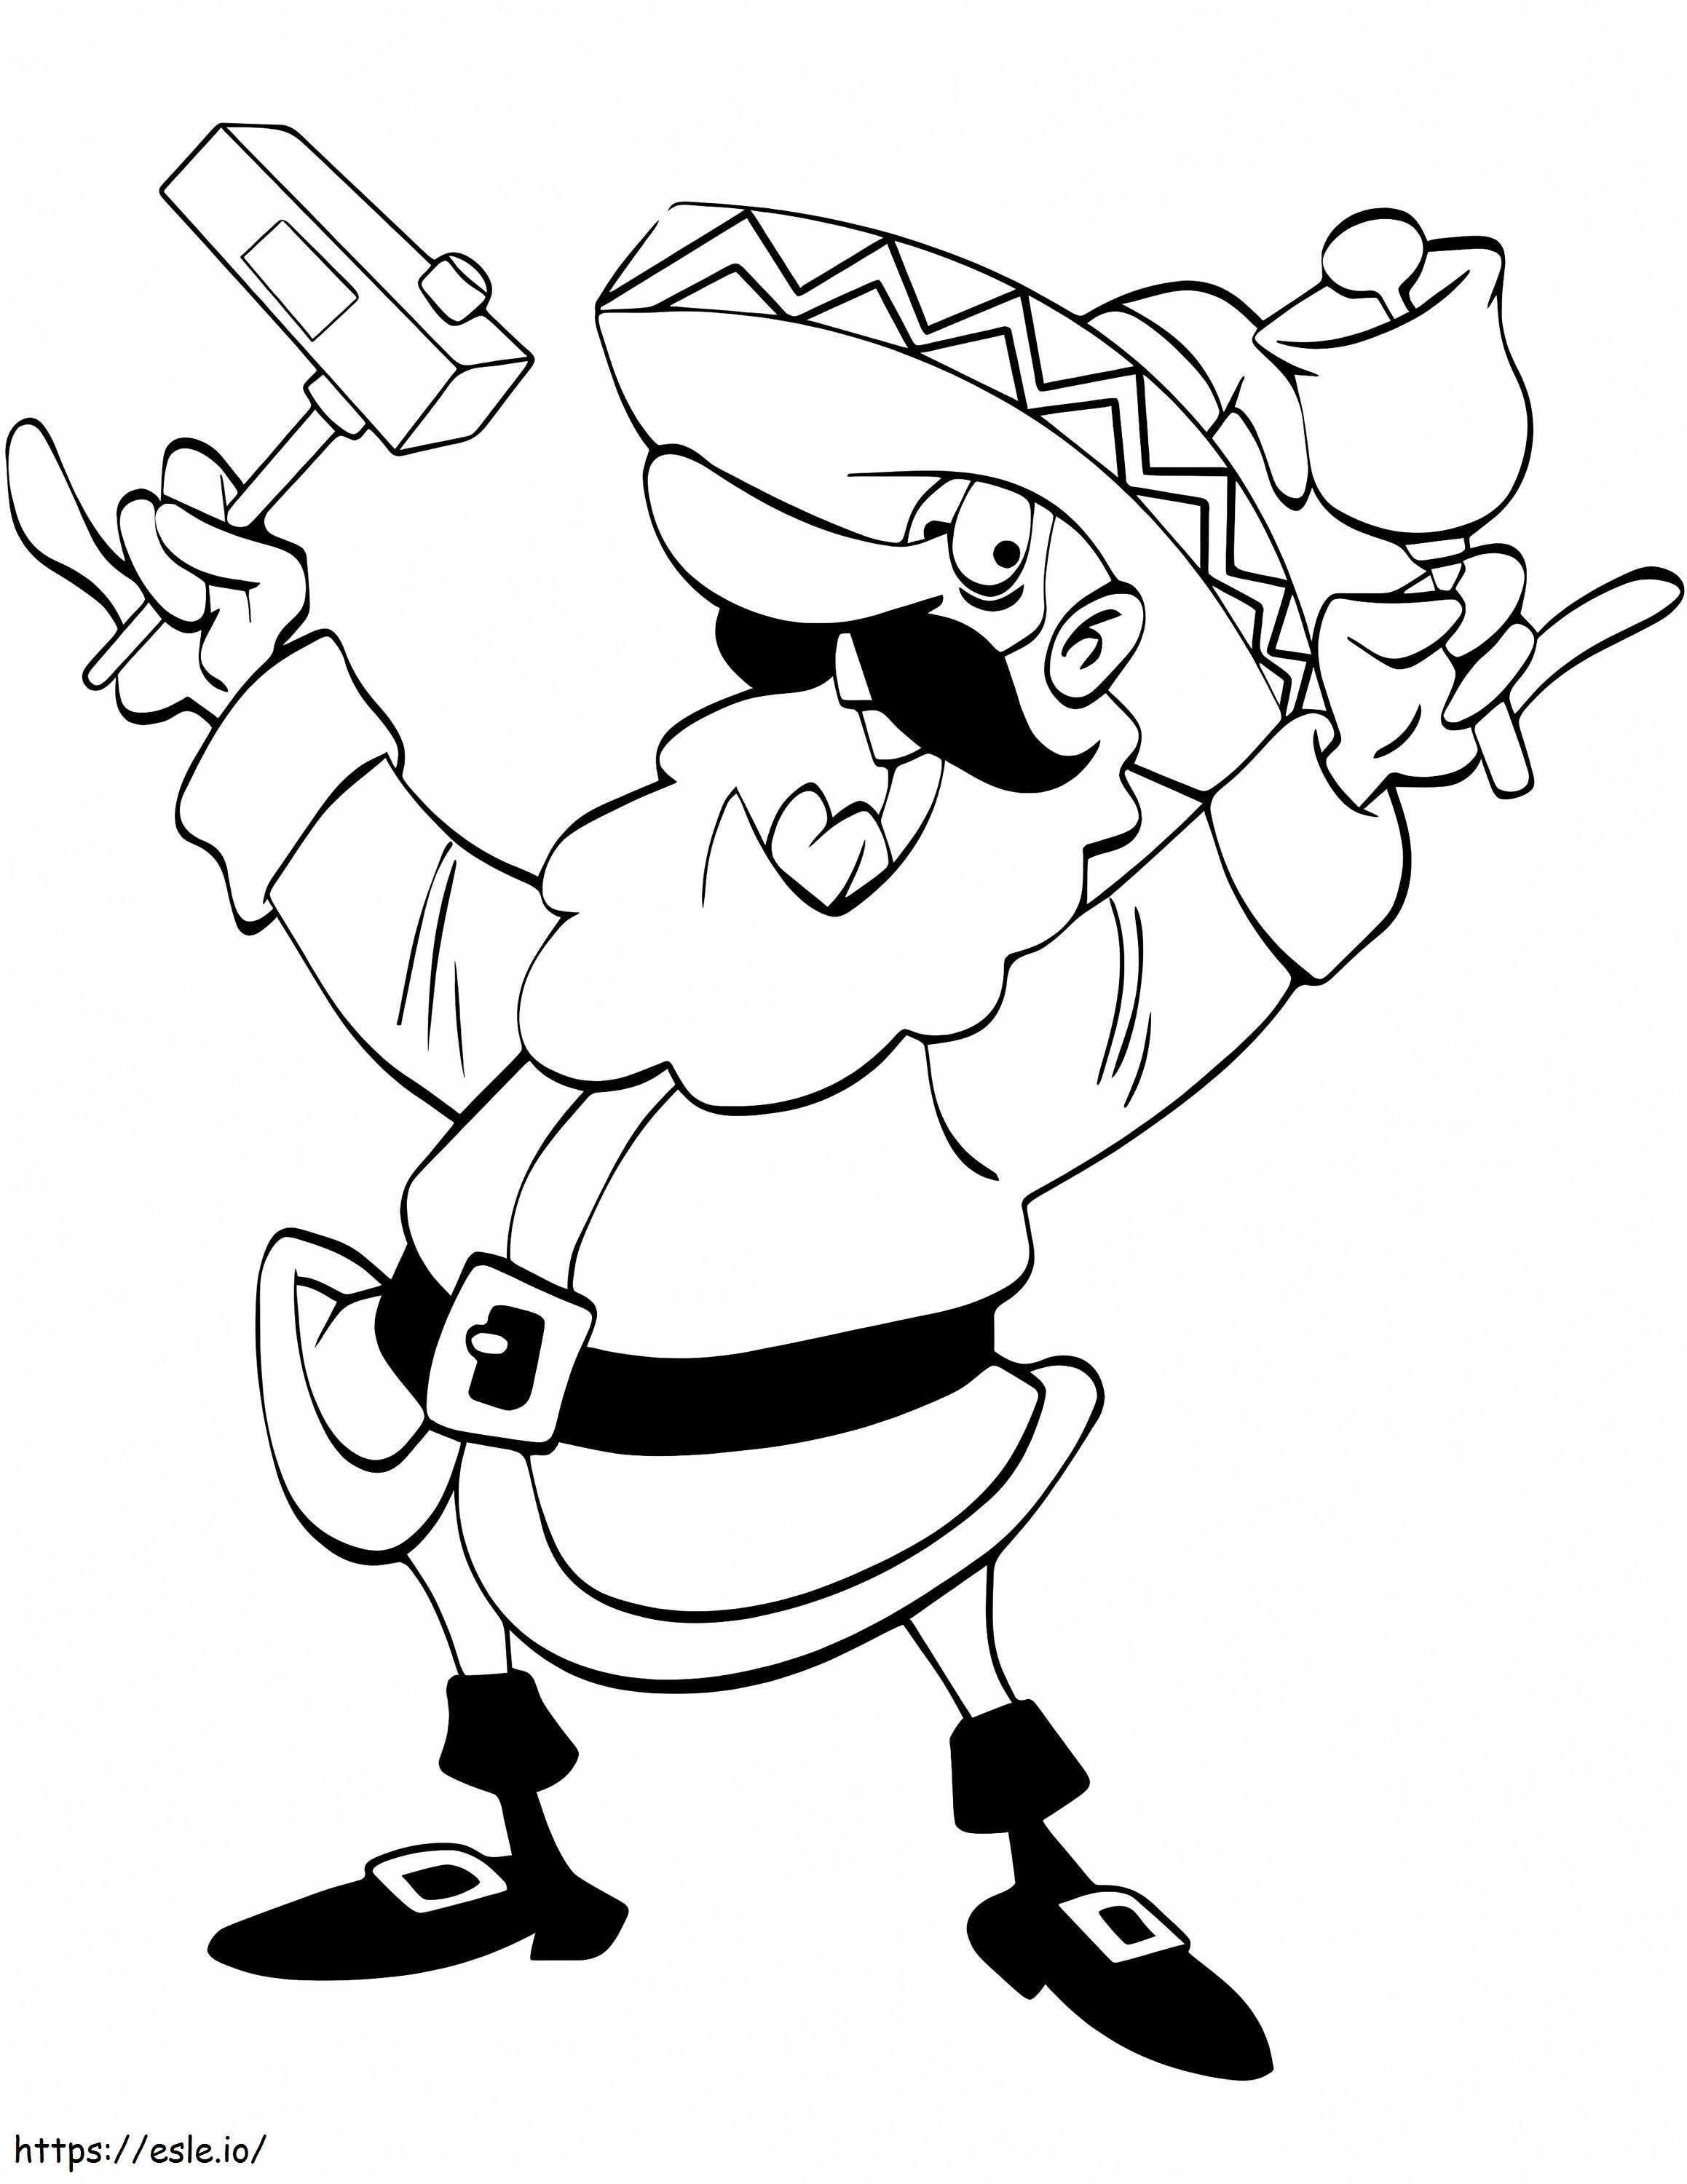 Santa Claus In Mexico coloring page